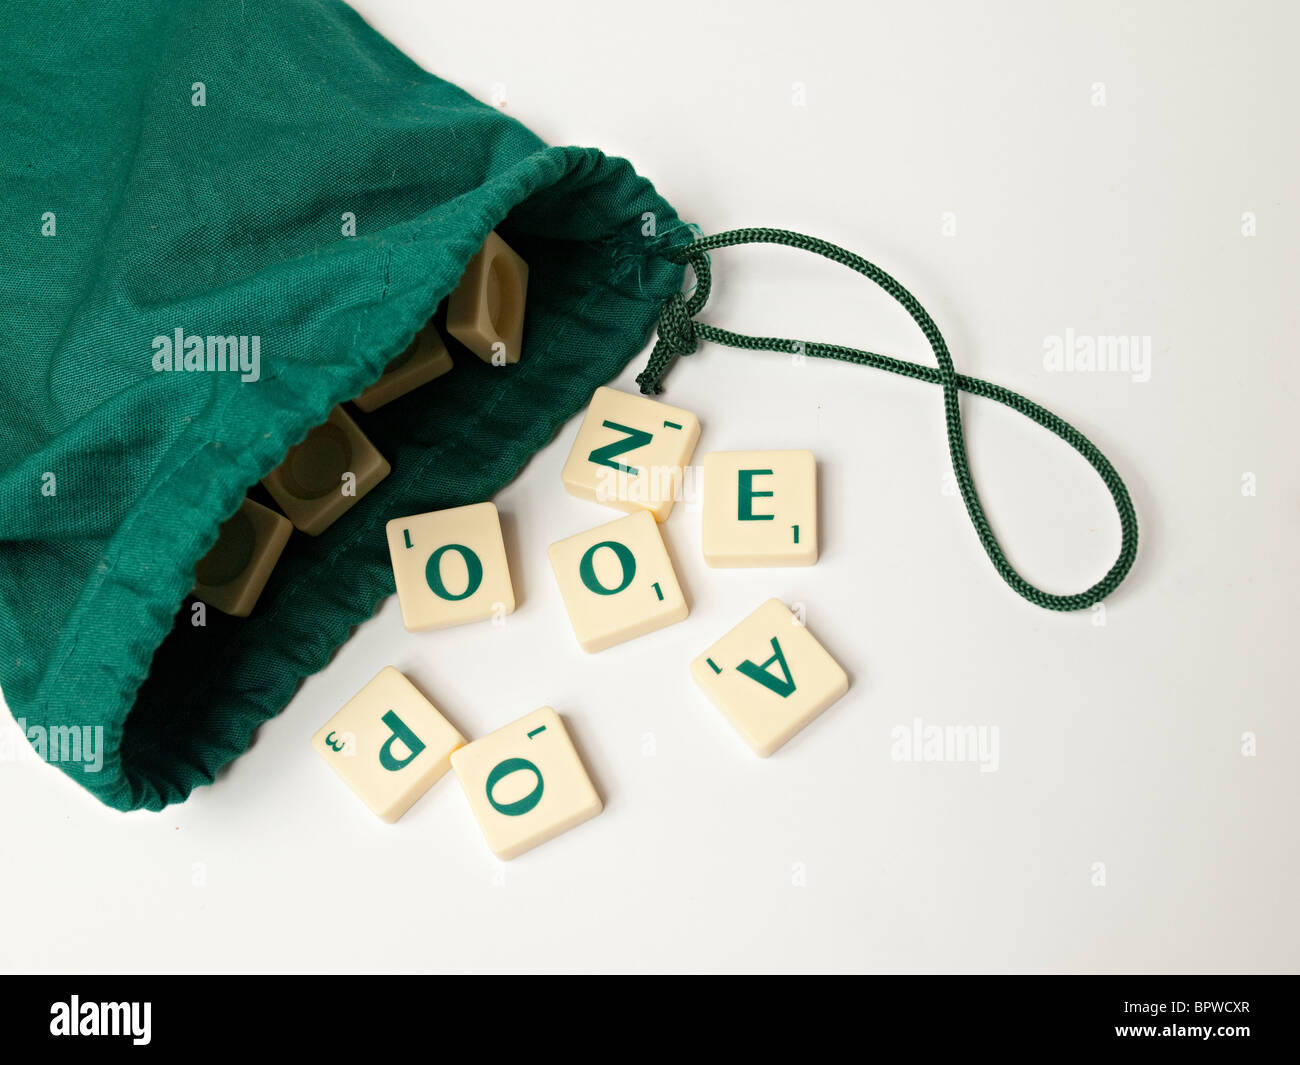 Scrabble azulejos caerse de una bolsa verde Foto de stock